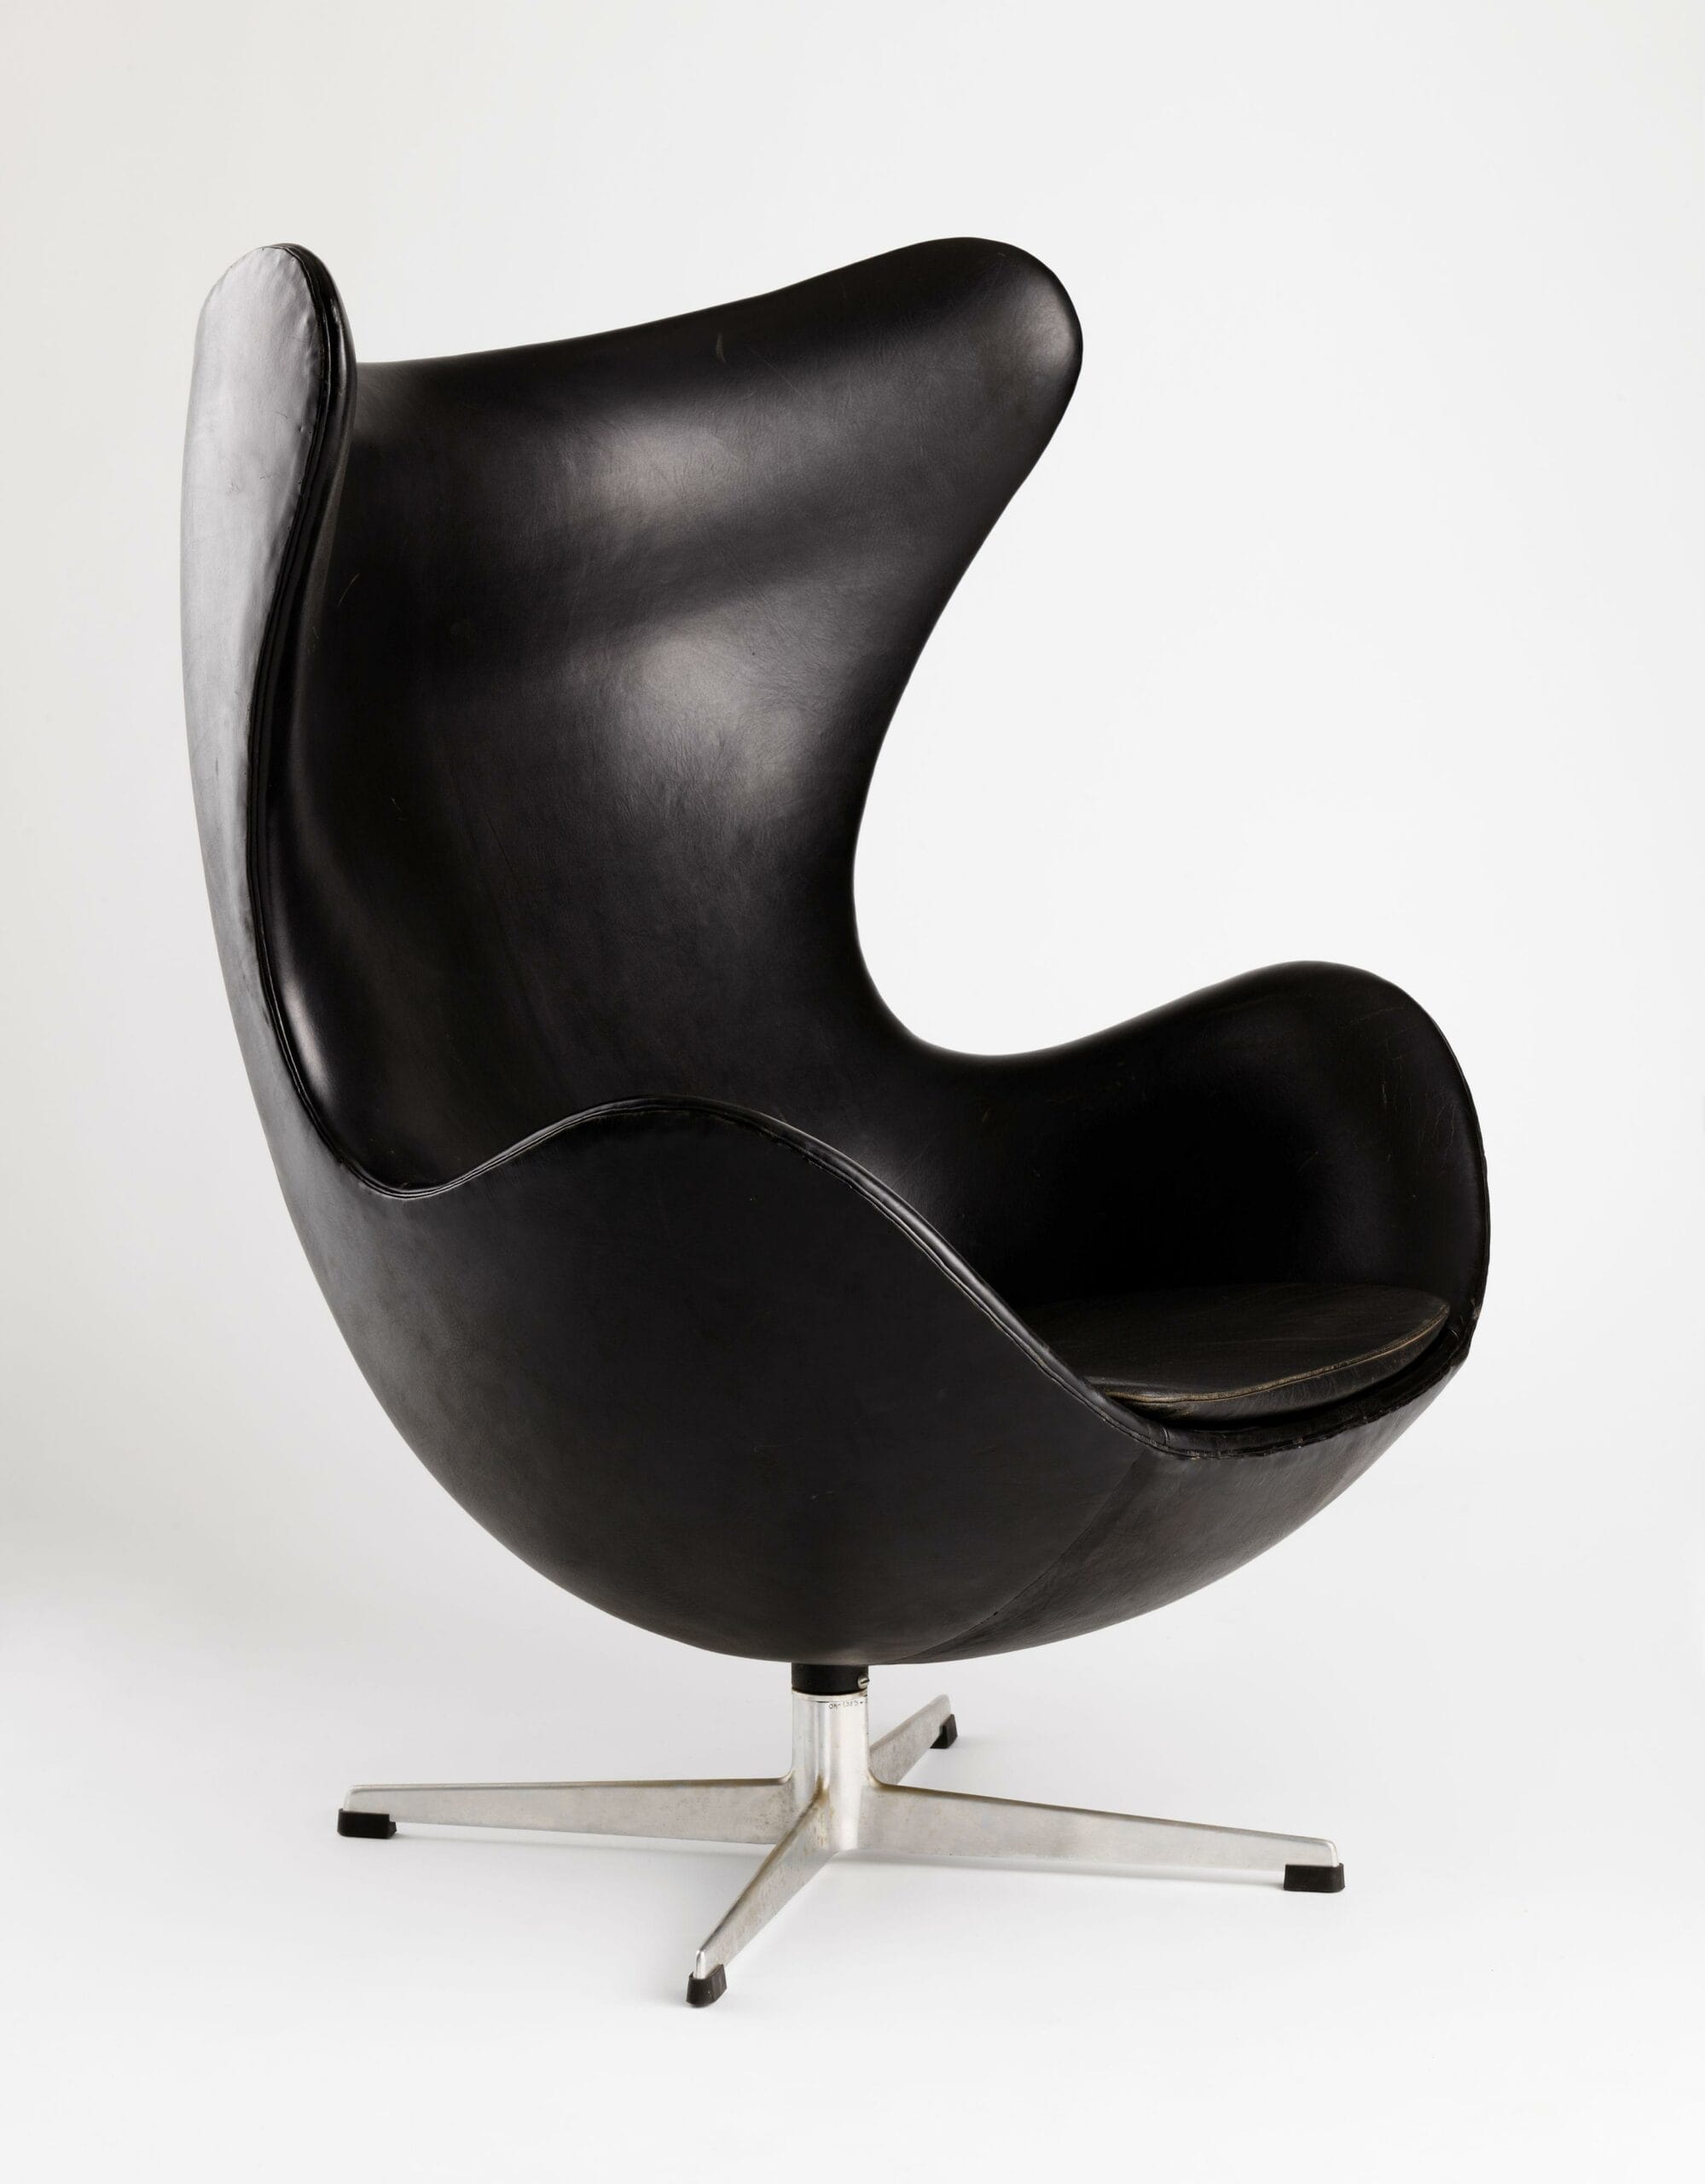 Egg chair - Arne Jacobsen (1958)